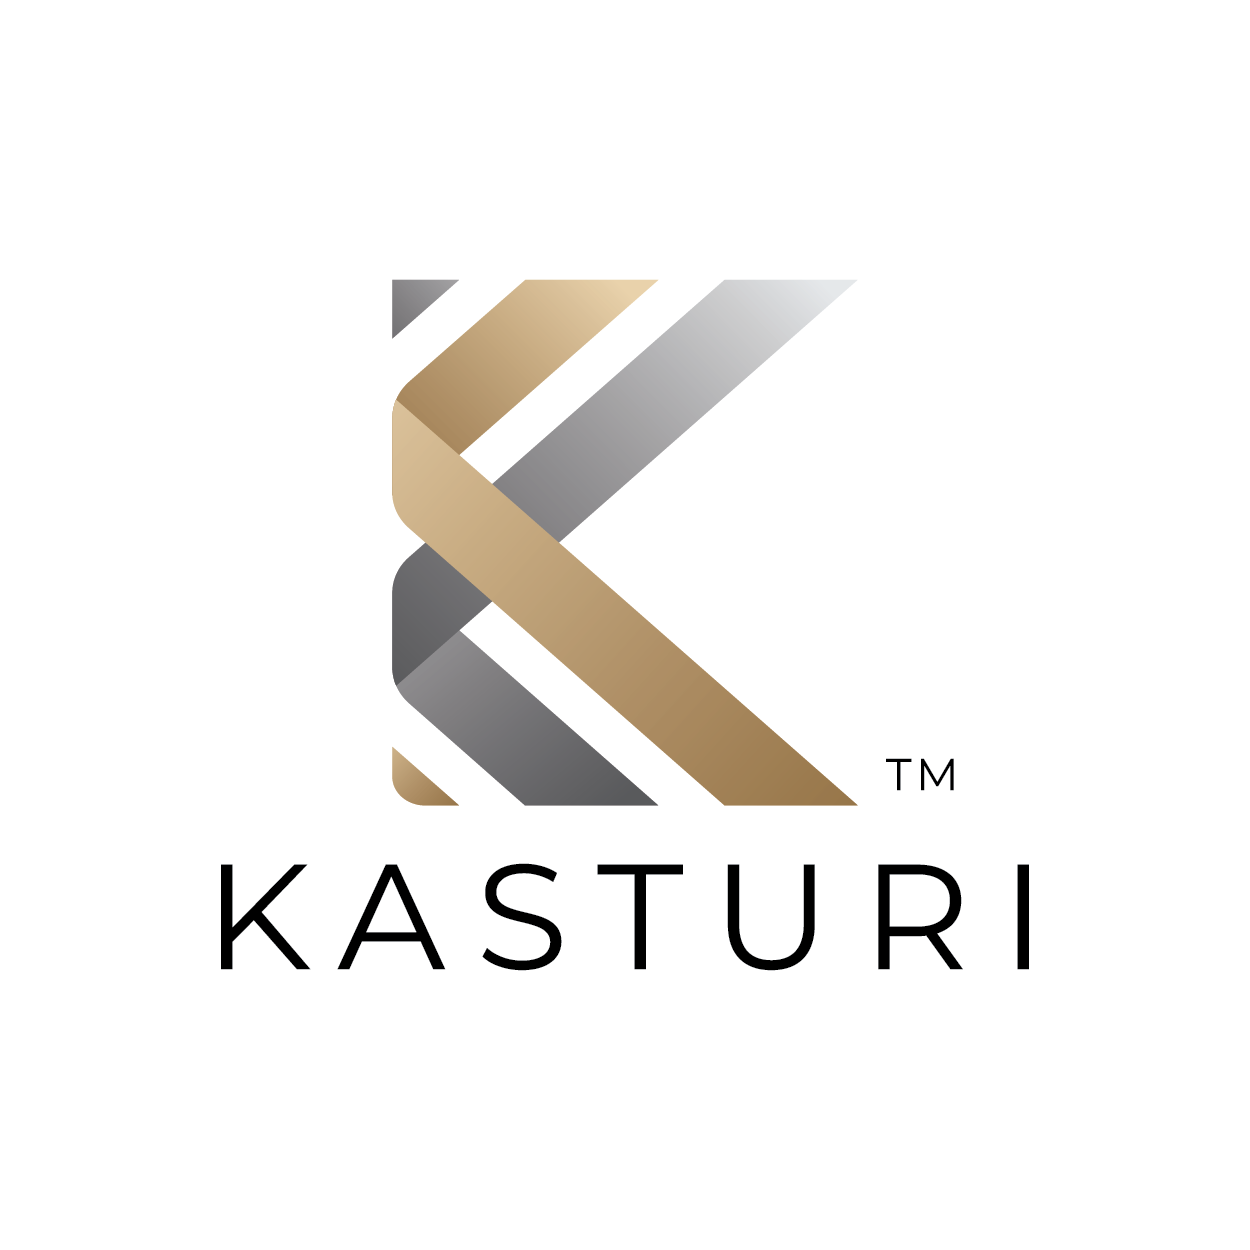 Kasturi Capital Holding